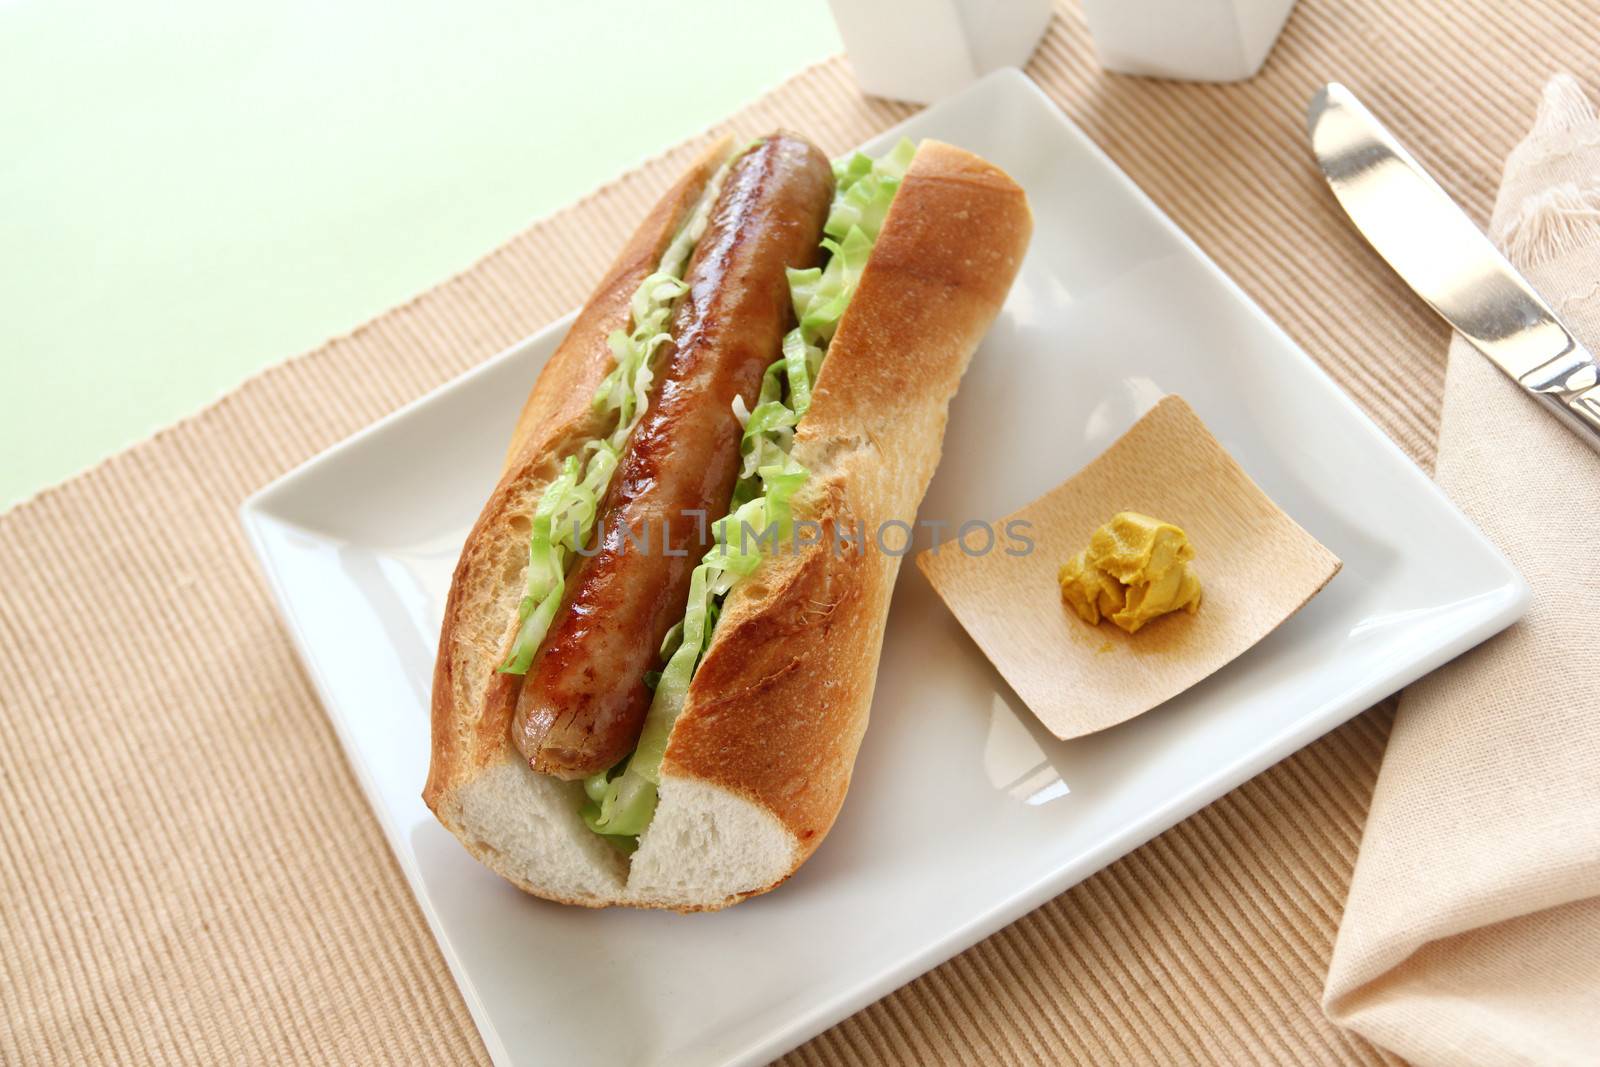 Pork And Cabbage Hot Dog by jabiru